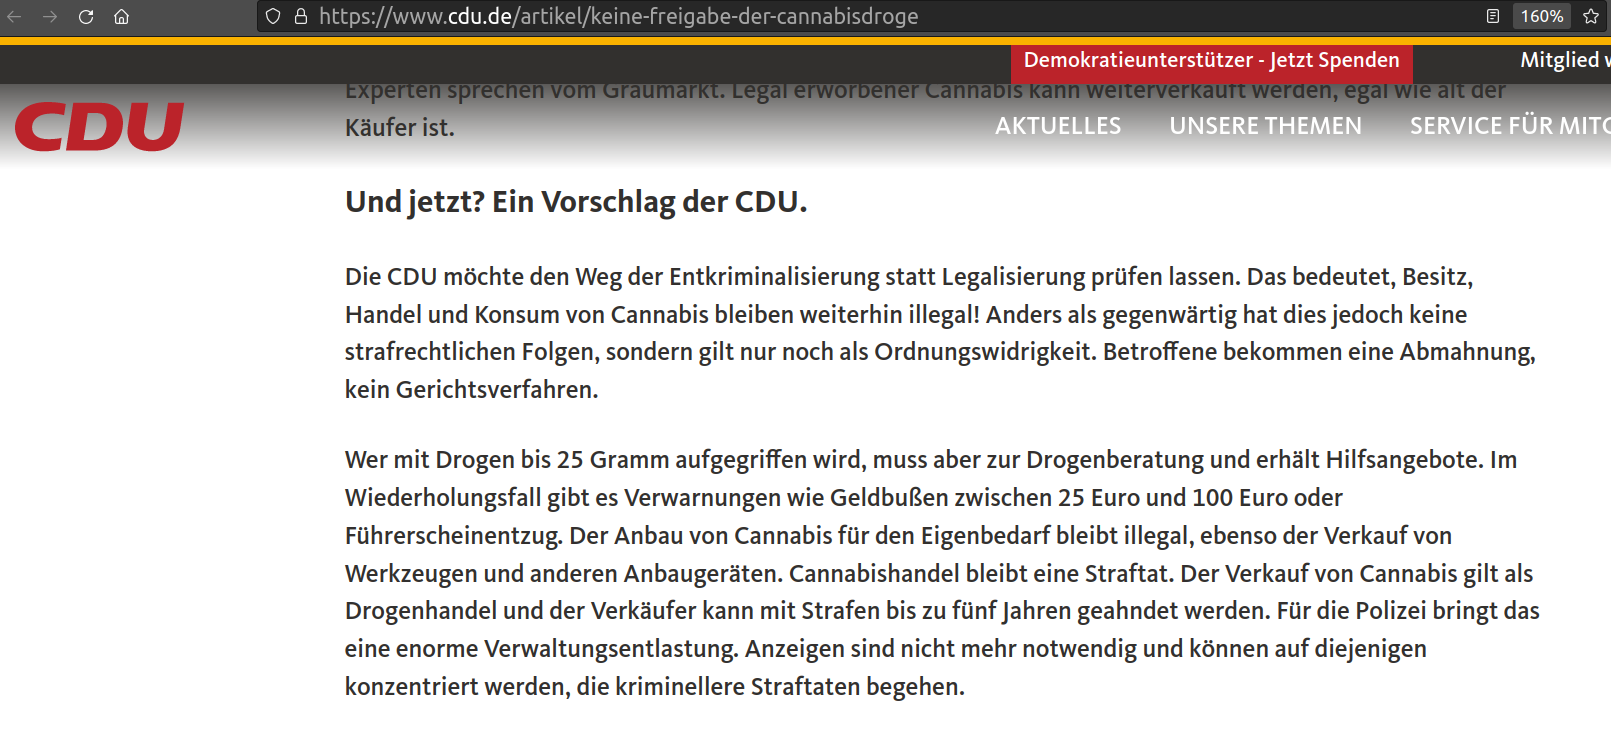 CDU für Entkriminalisierung?